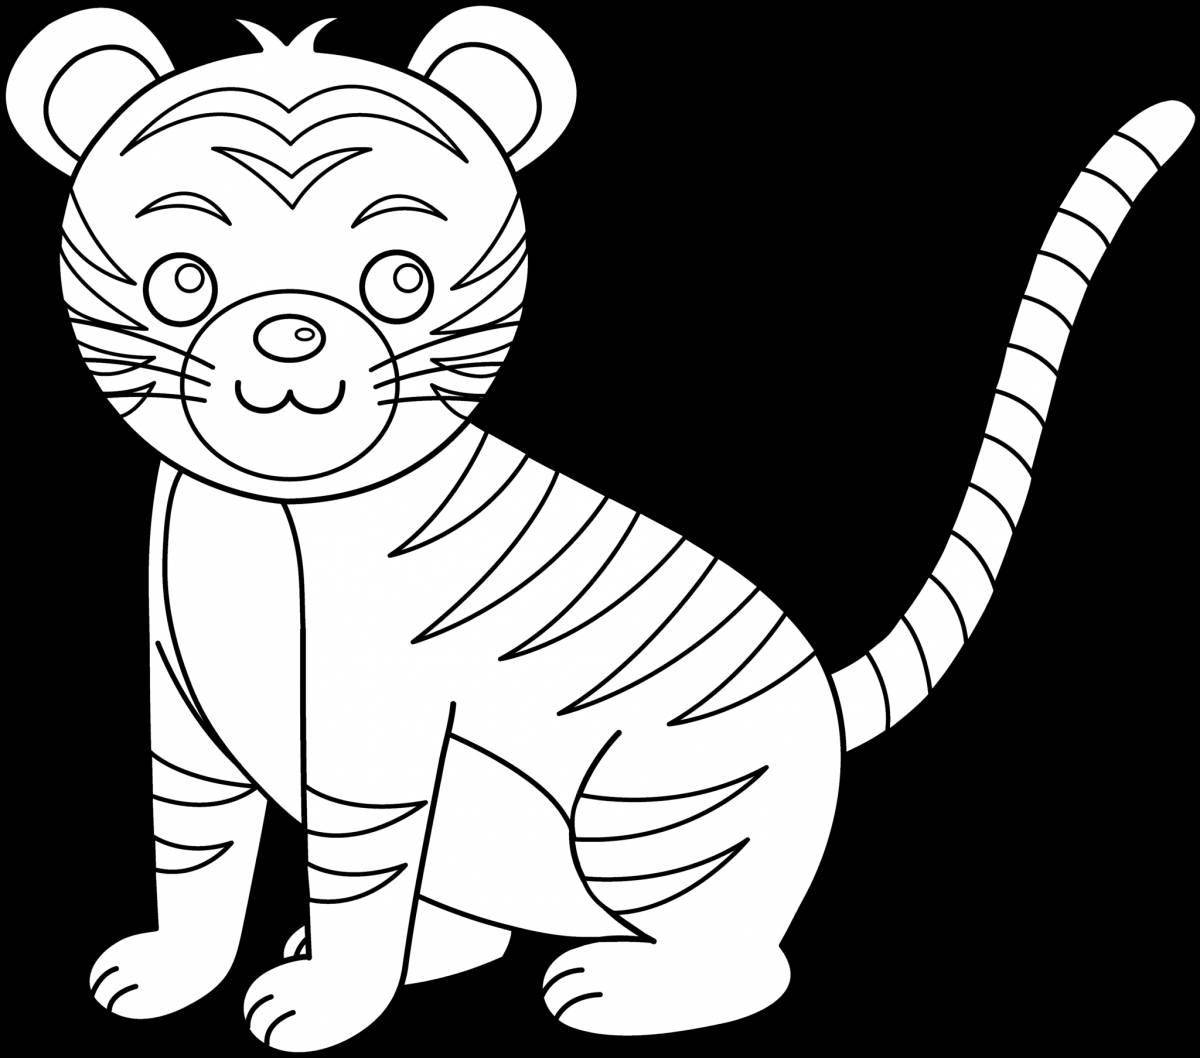 Violent tiger coloring pages for kids